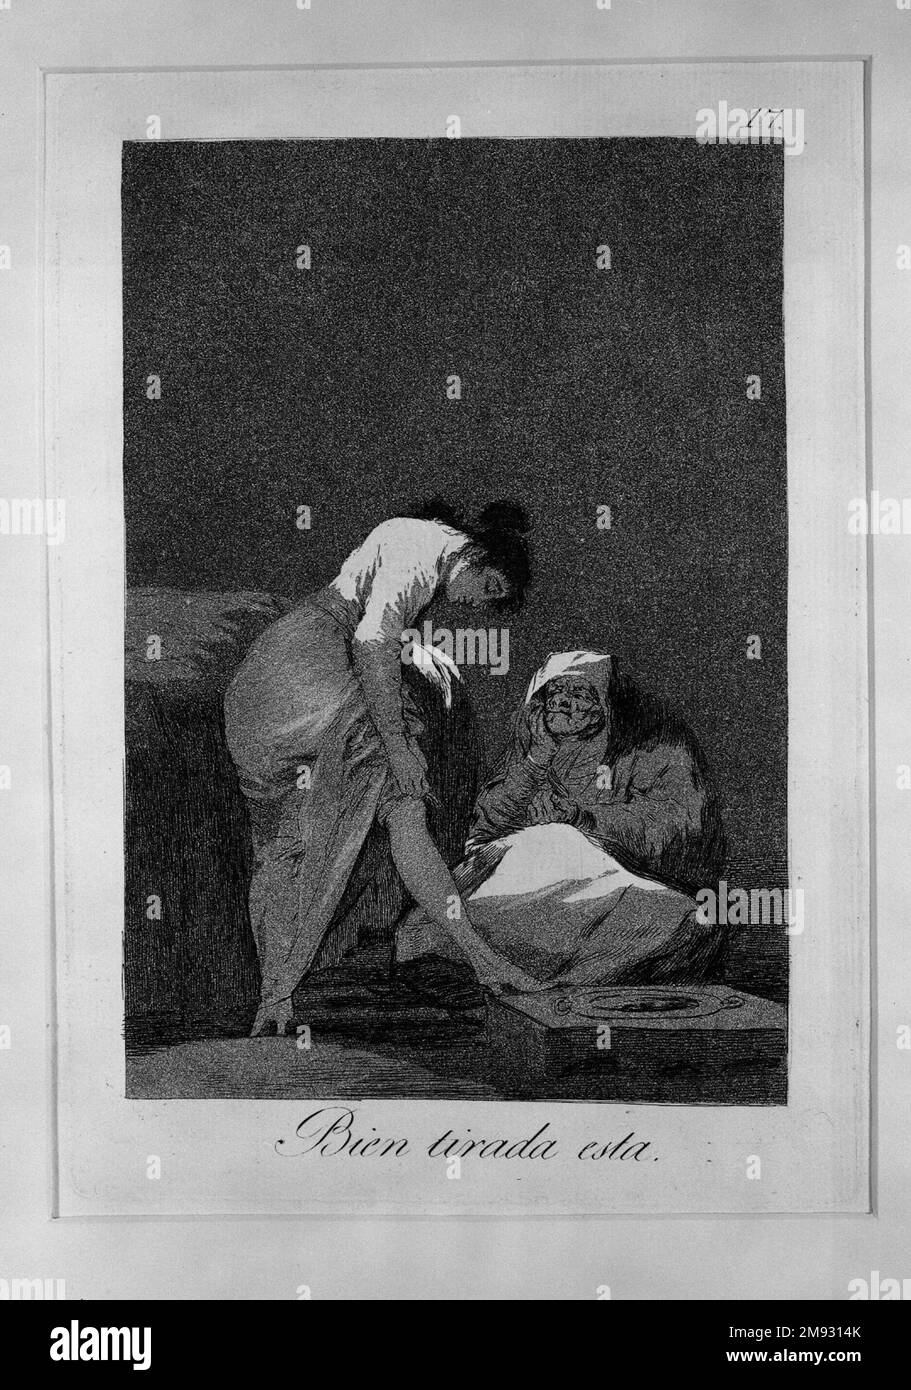 Está bien estirado (Bien tirada está) Francisco de Goya y Lucientes  (español, 1746-1828). Está bien estirado (Bien tirada está), 1797-1798.  Grabado, aguatinta y punta seca en papel tendido, Hoja: 11 13/16 x